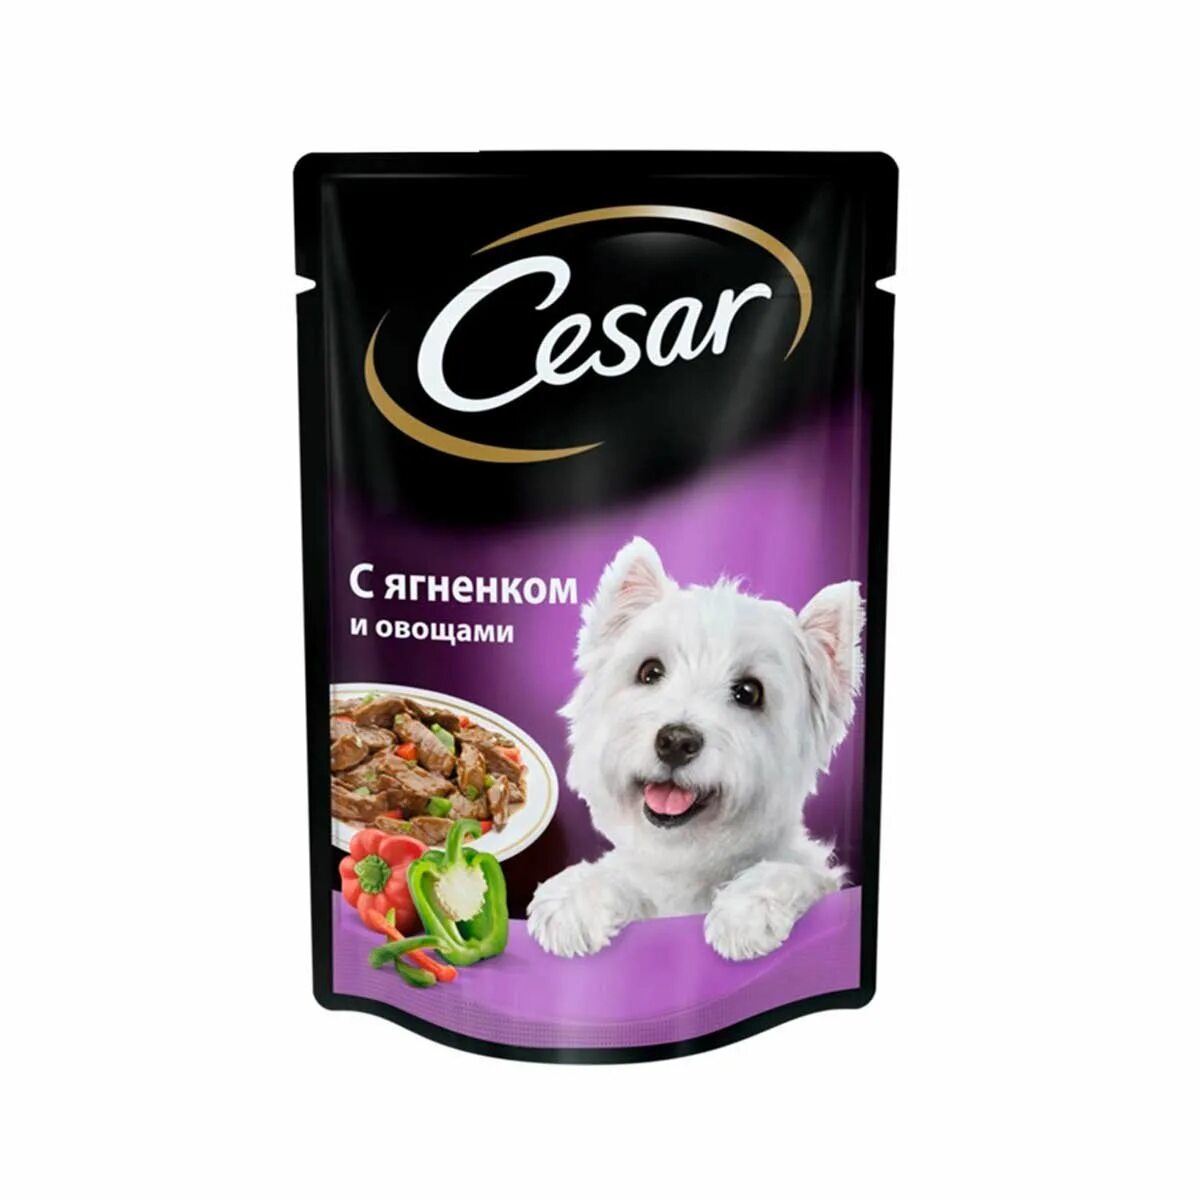 Влажный корм для собак Cesar. Сезар корм влажный для собак. Cesar д/с жаркое с уткой м/п 85г/28. Cesar для собак 85г. Корм для собак 8 кг